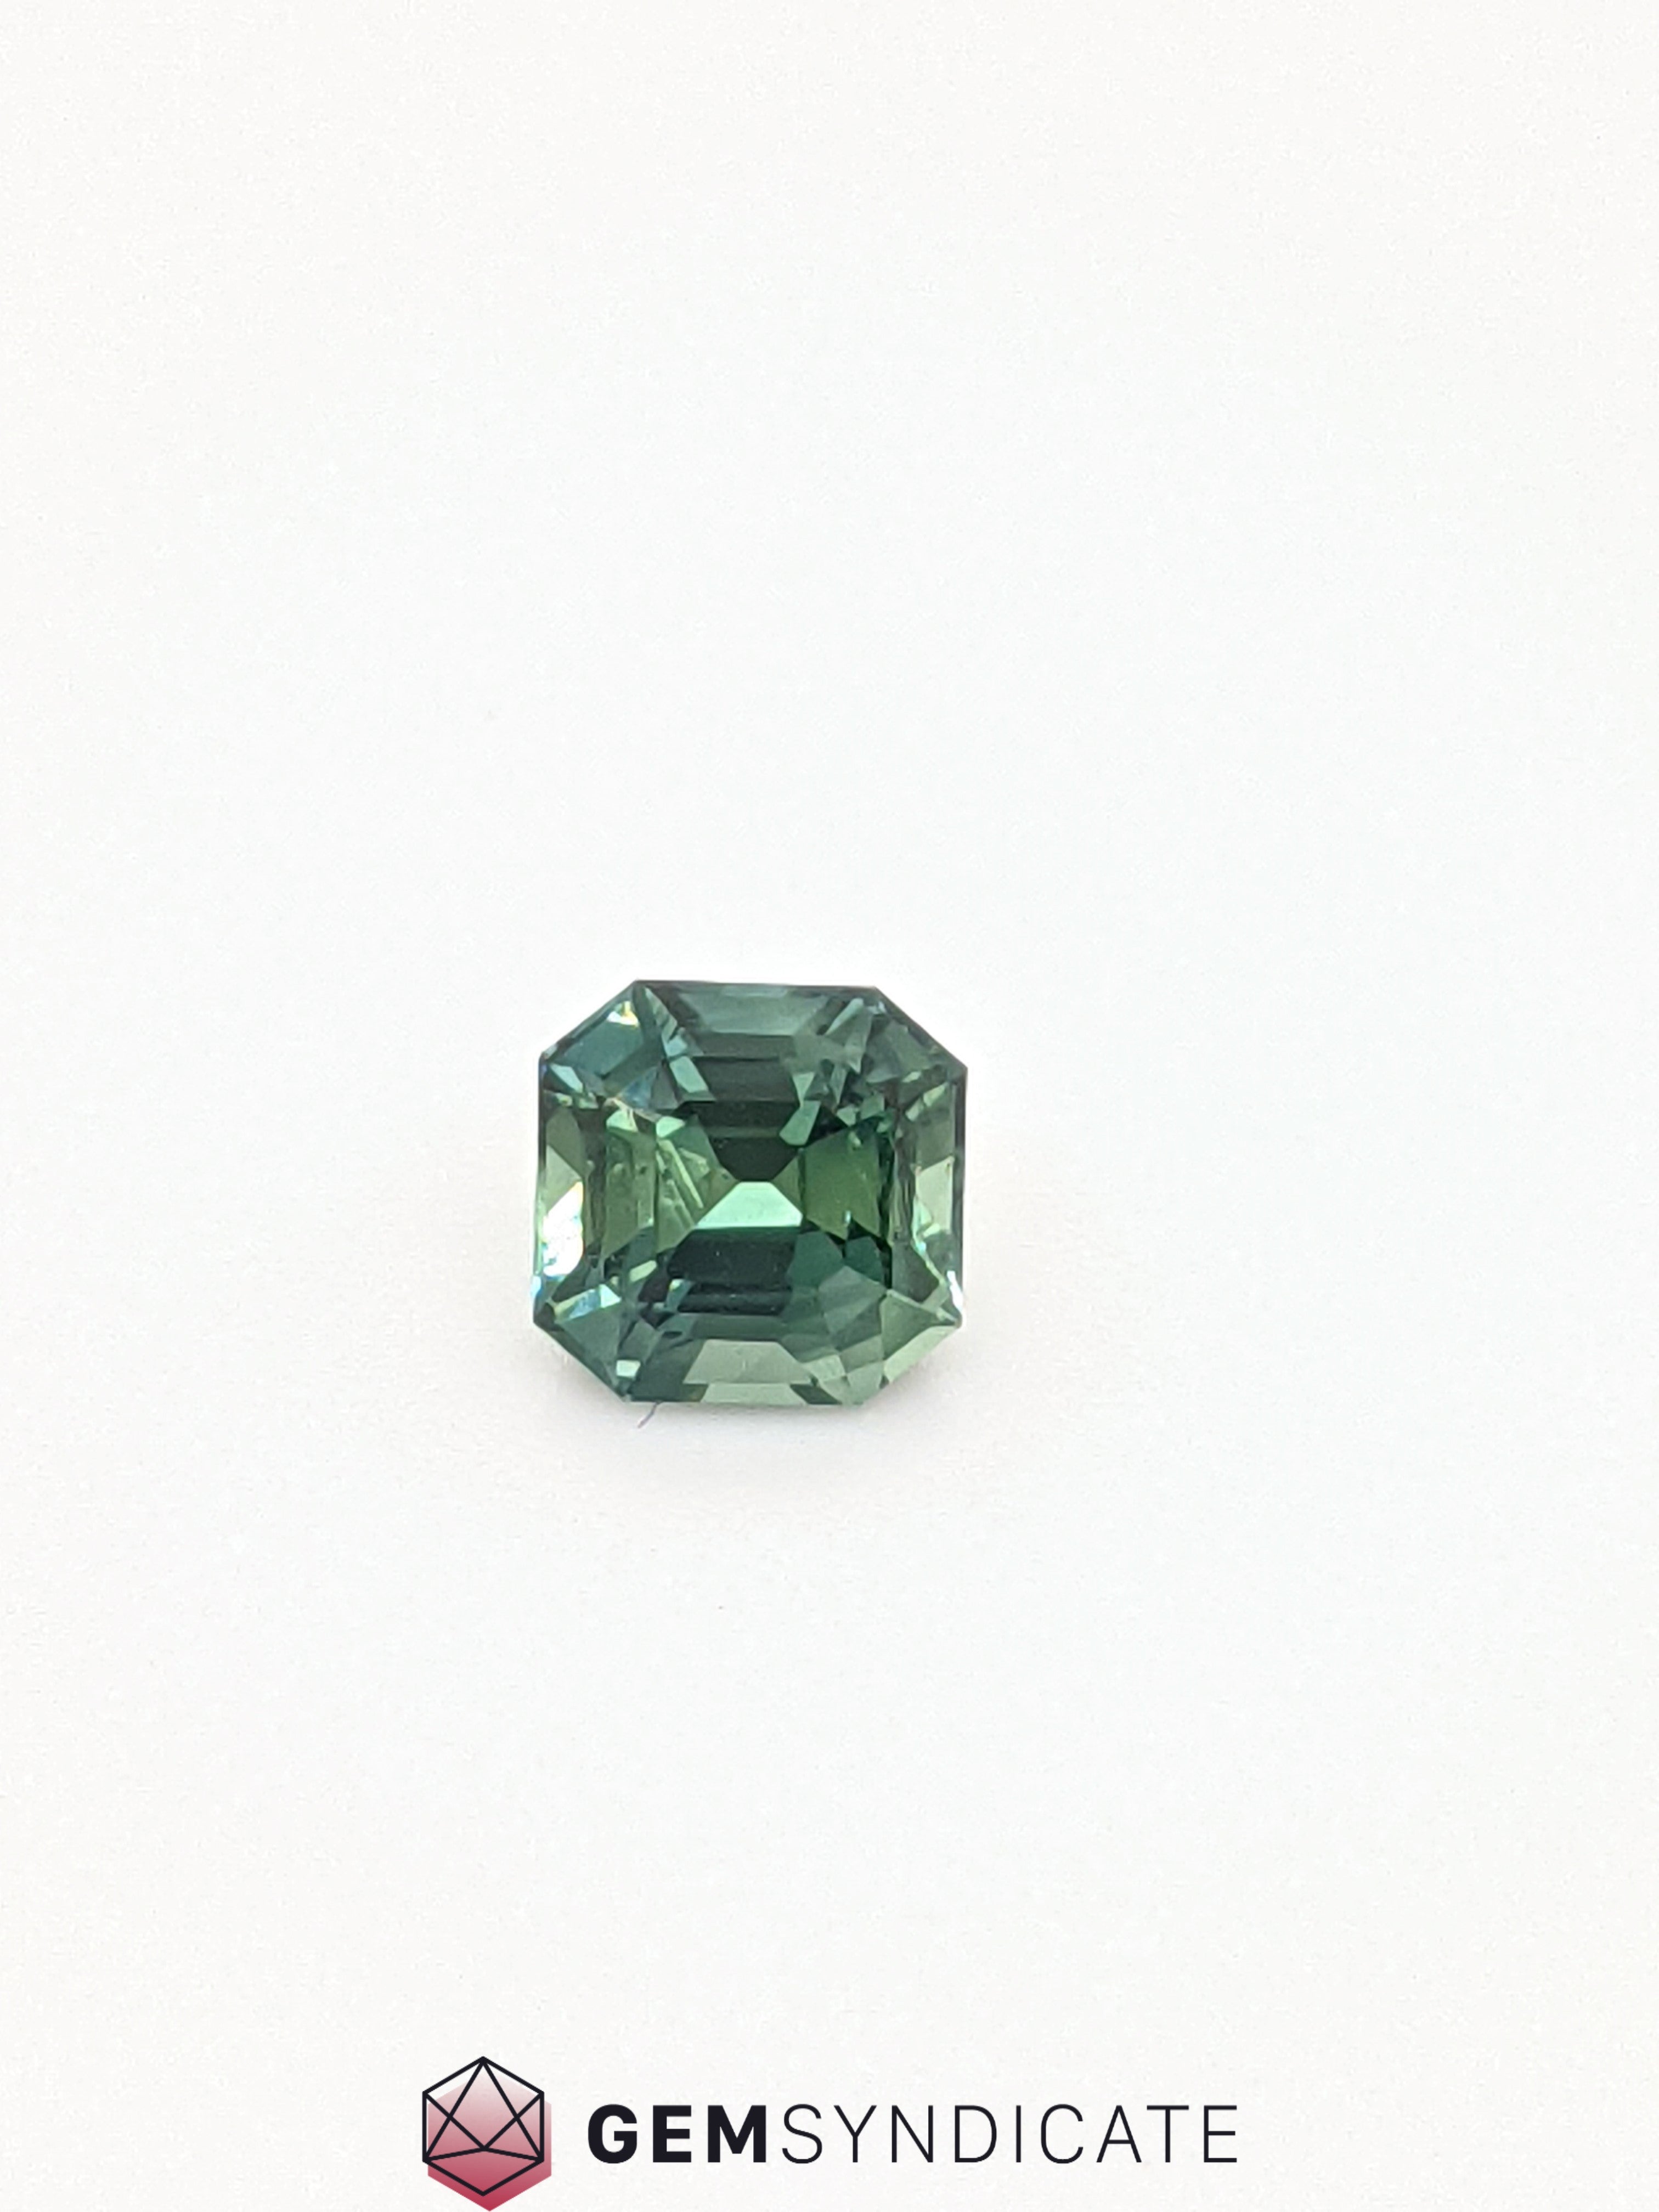 Sensational Emerald Cut Teal Sapphire 0.97ct